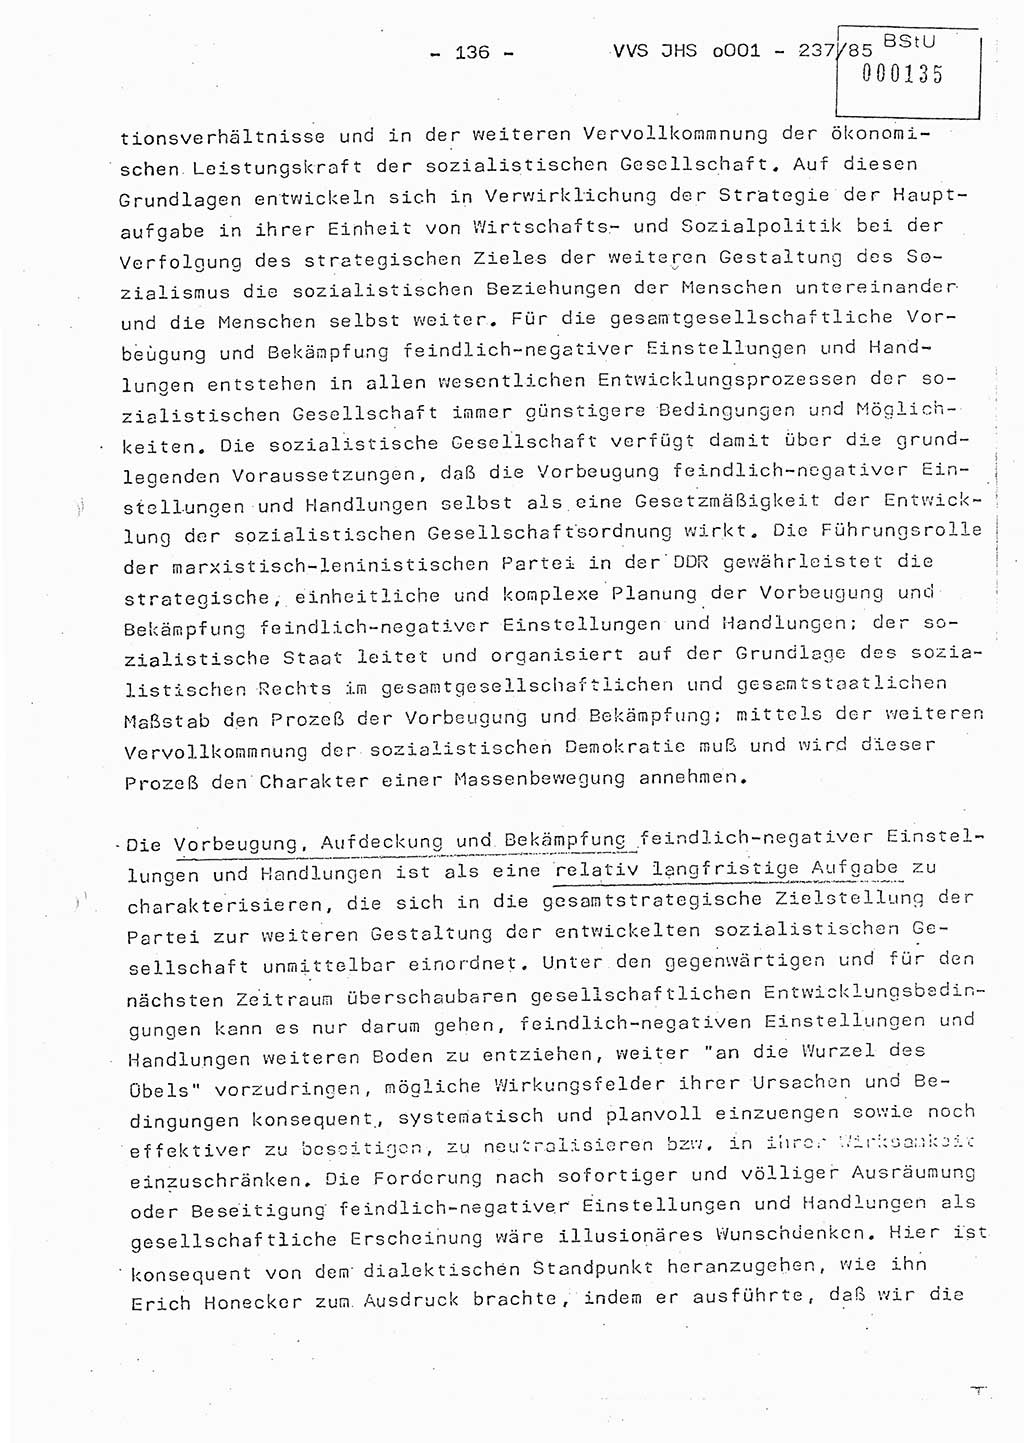 Dissertation Oberstleutnant Peter Jakulski (JHS), Oberstleutnat Christian Rudolph (HA Ⅸ), Major Horst Böttger (ZMD), Major Wolfgang Grüneberg (JHS), Major Albert Meutsch (JHS), Ministerium für Staatssicherheit (MfS) [Deutsche Demokratische Republik (DDR)], Juristische Hochschule (JHS), Vertrauliche Verschlußsache (VVS) o001-237/85, Potsdam 1985, Seite 136 (Diss. MfS DDR JHS VVS o001-237/85 1985, S. 136)